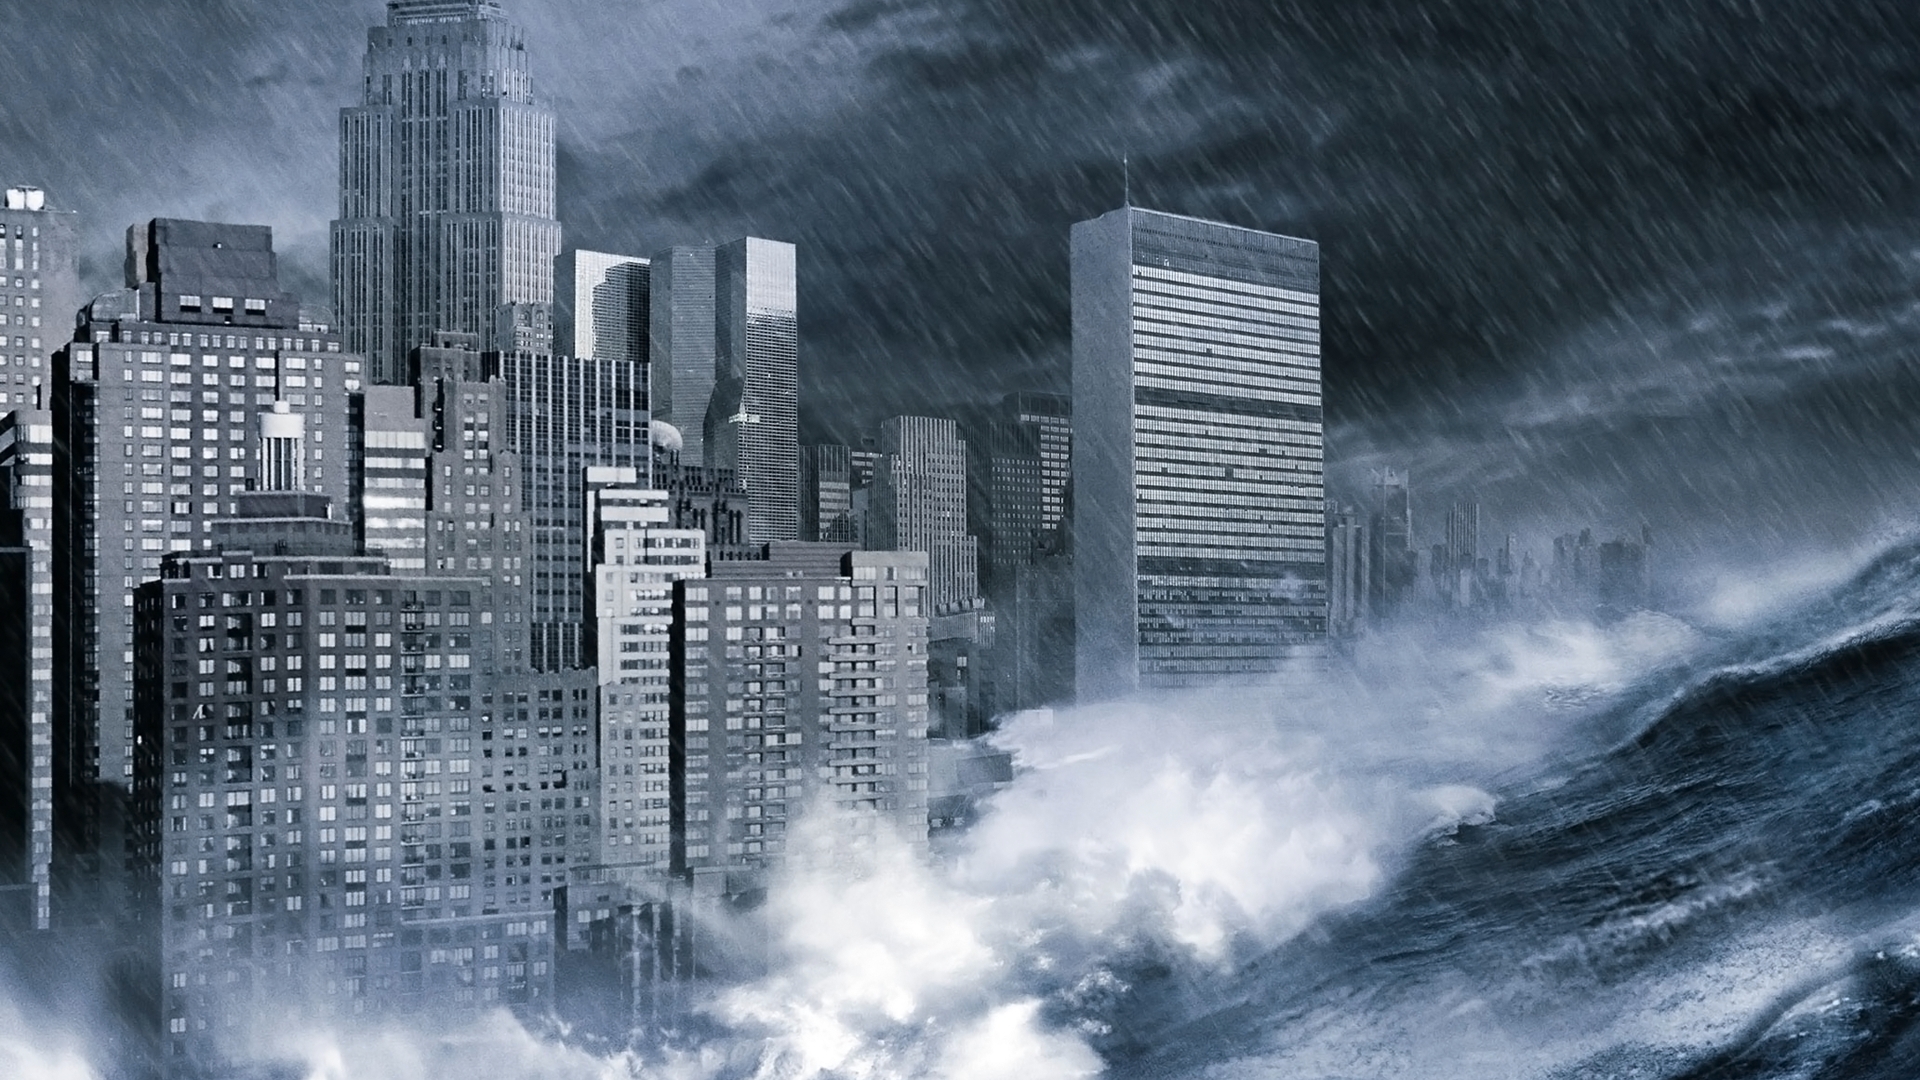 waves, apocalypse, cities - desktop wallpaper